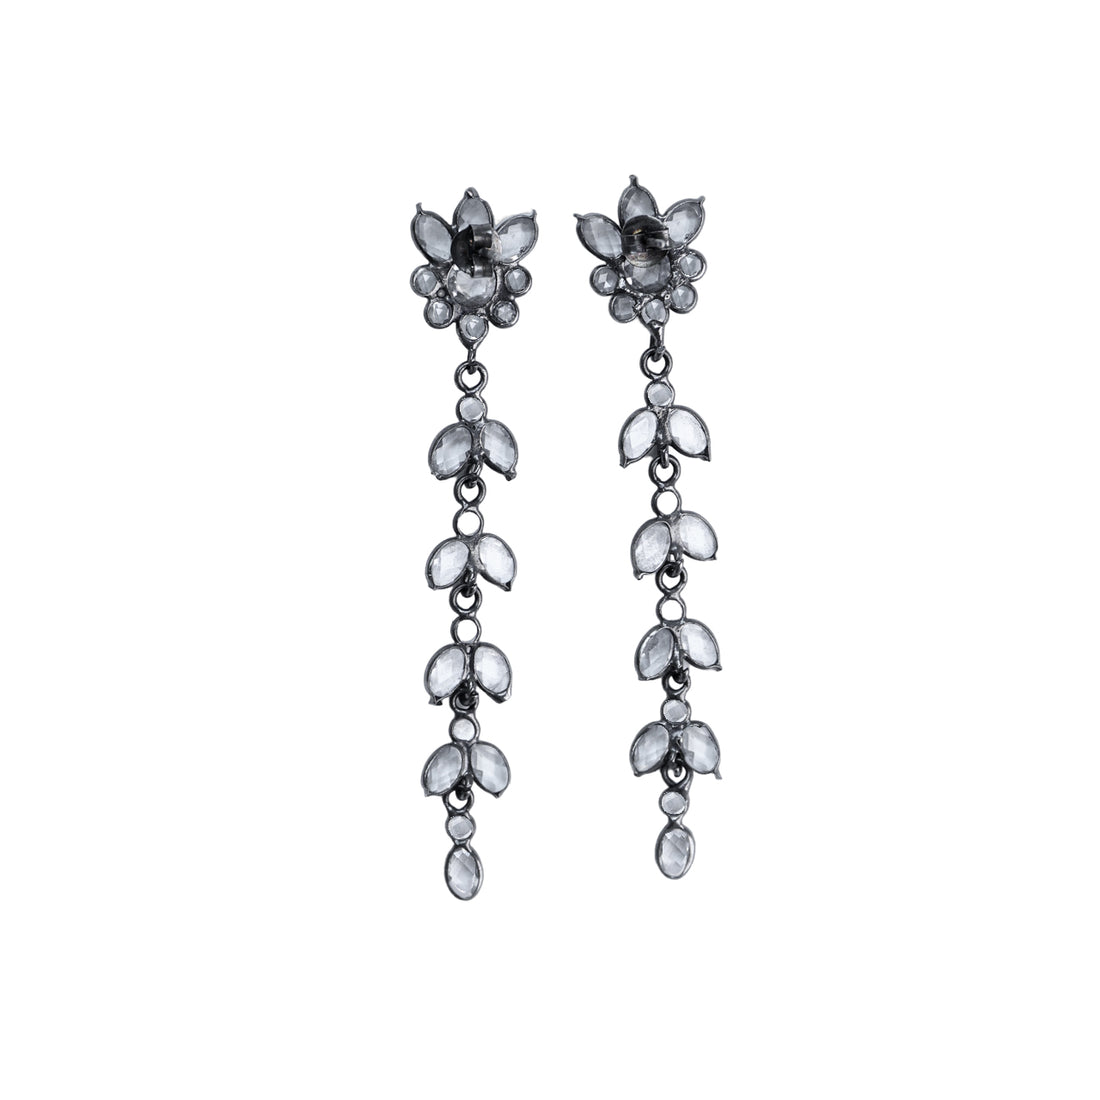 NN vintage floral earrings